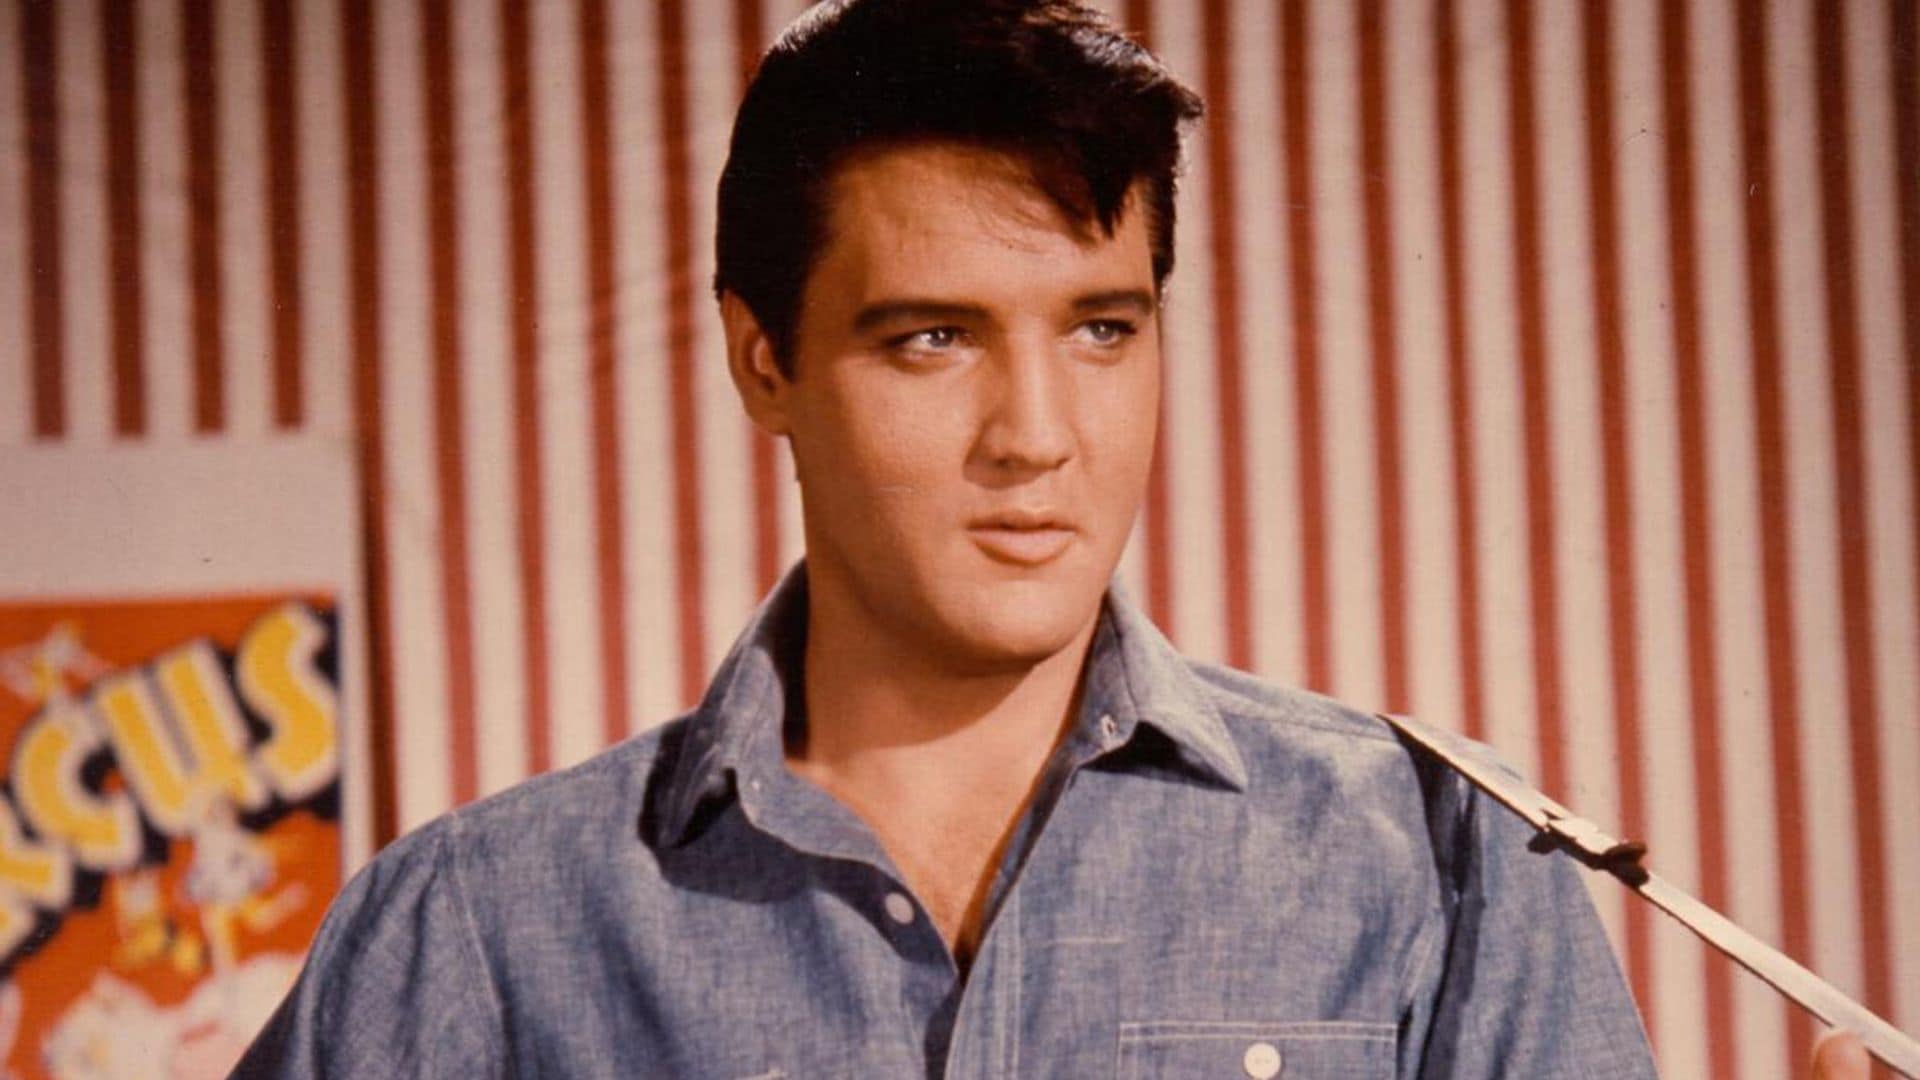 Elvis Presley in a movie still